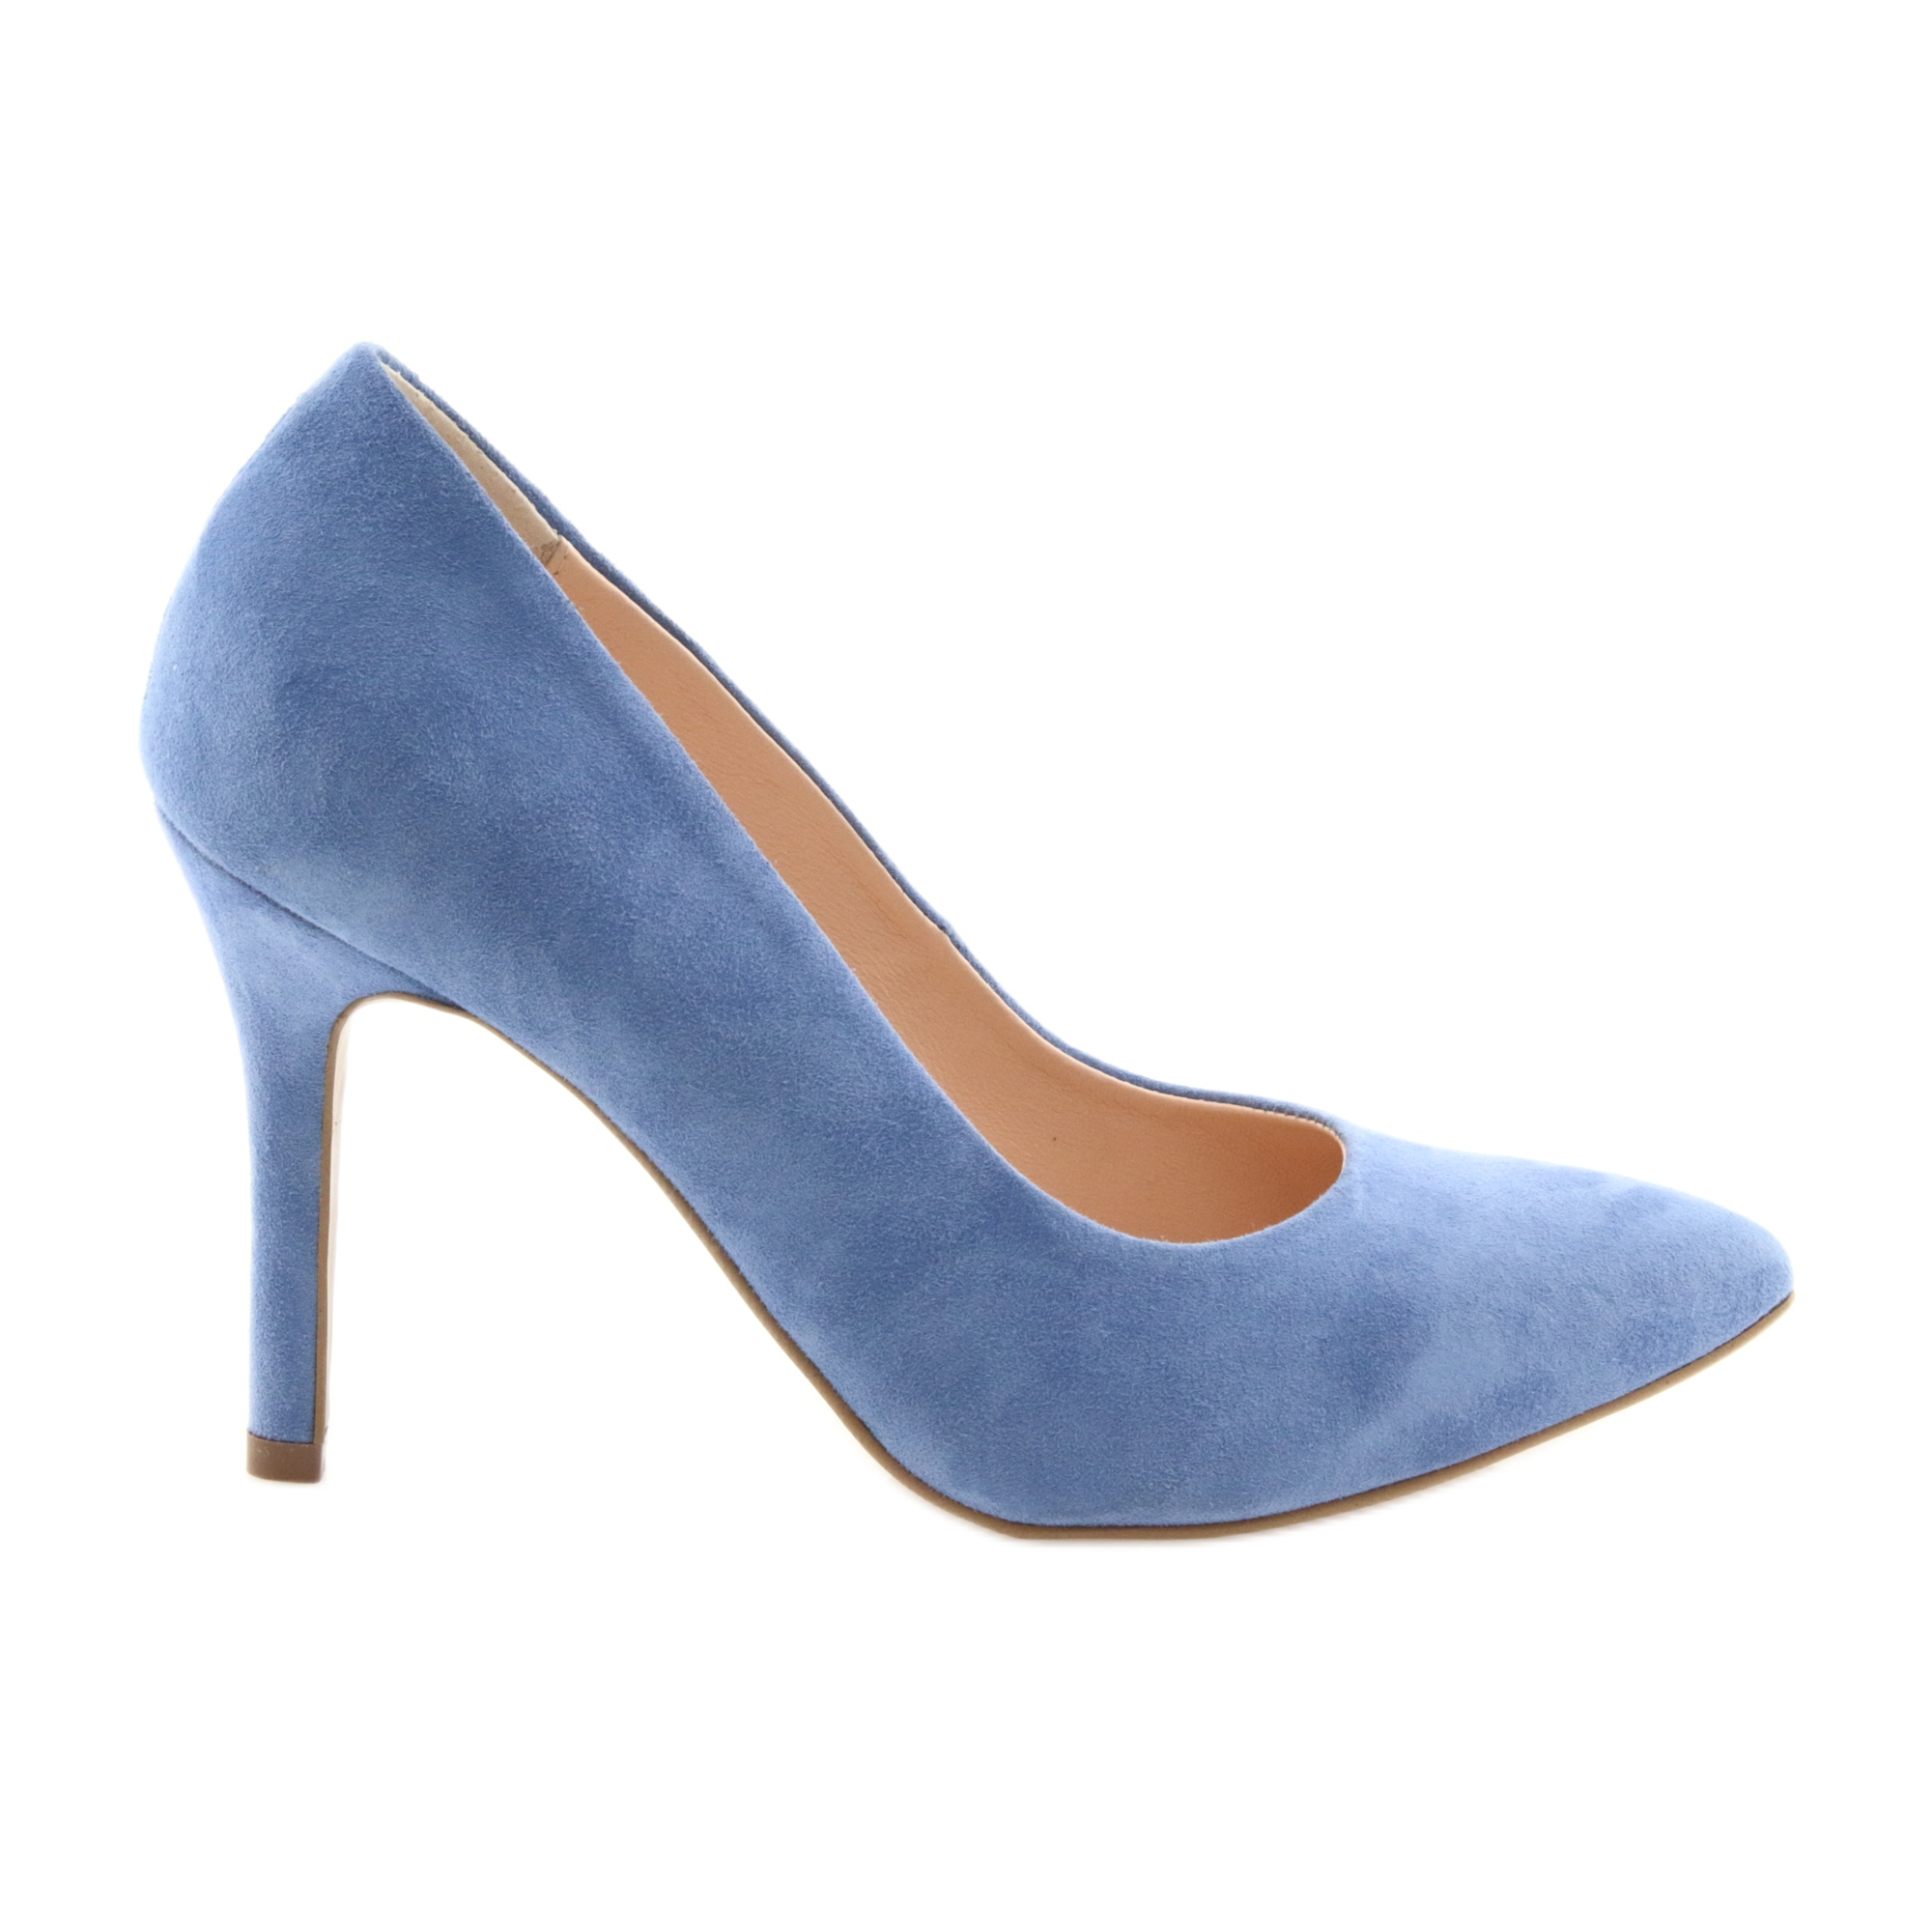 Czółenka na szpilce buty damskie Edeo 3313 niebieski niebieskie